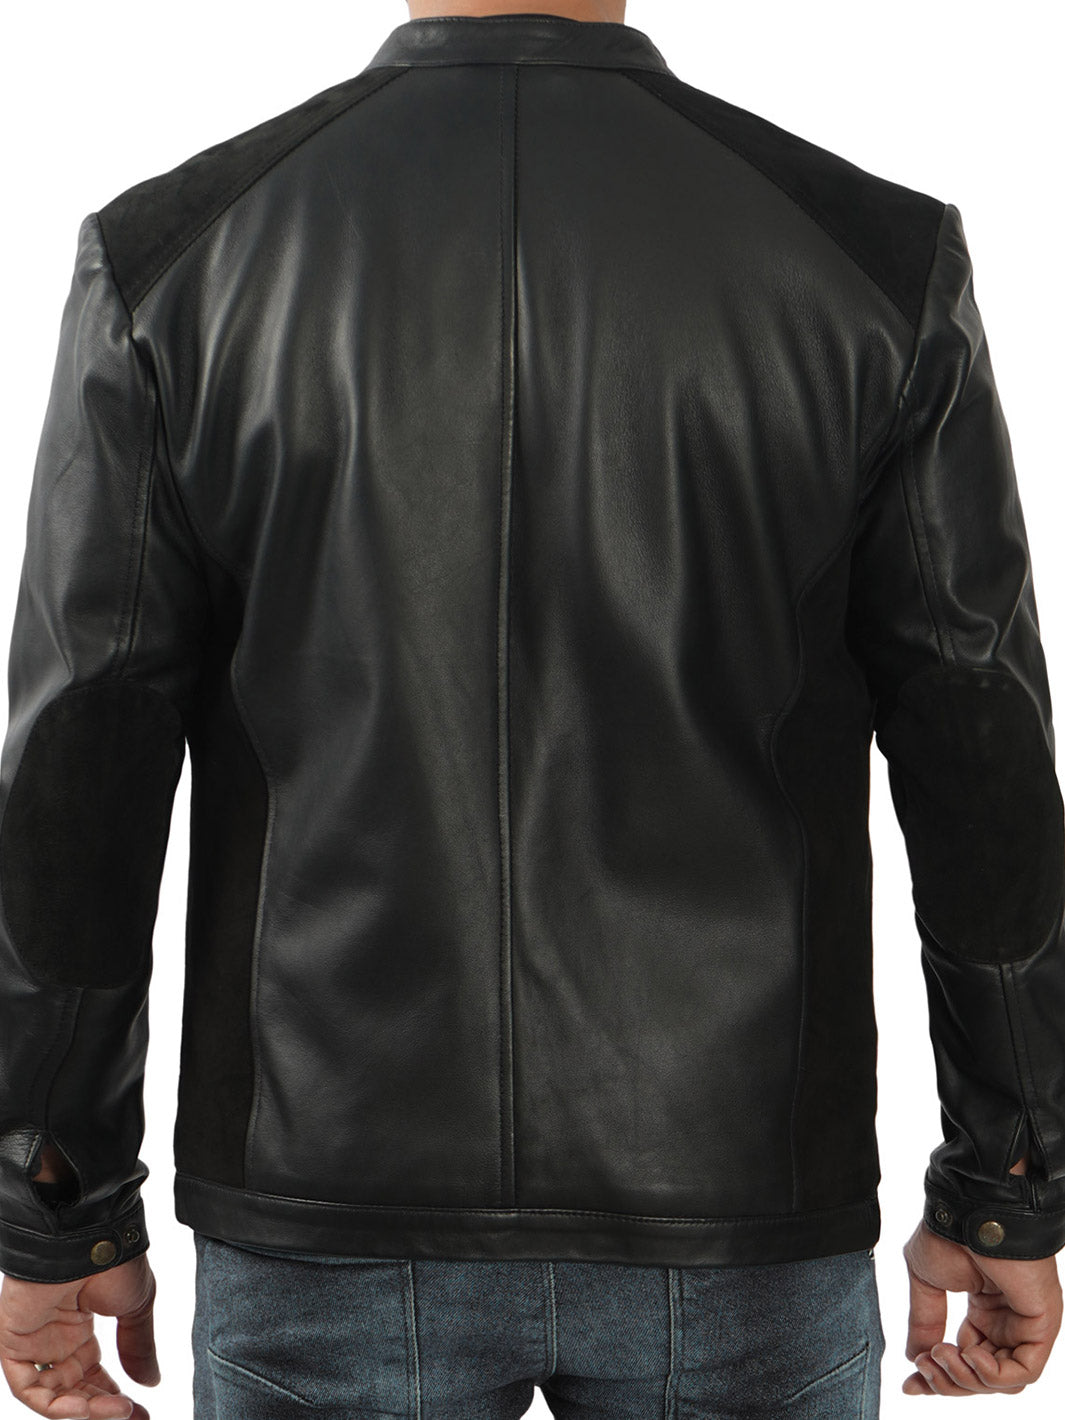 Mens Black Leather Jacket for men